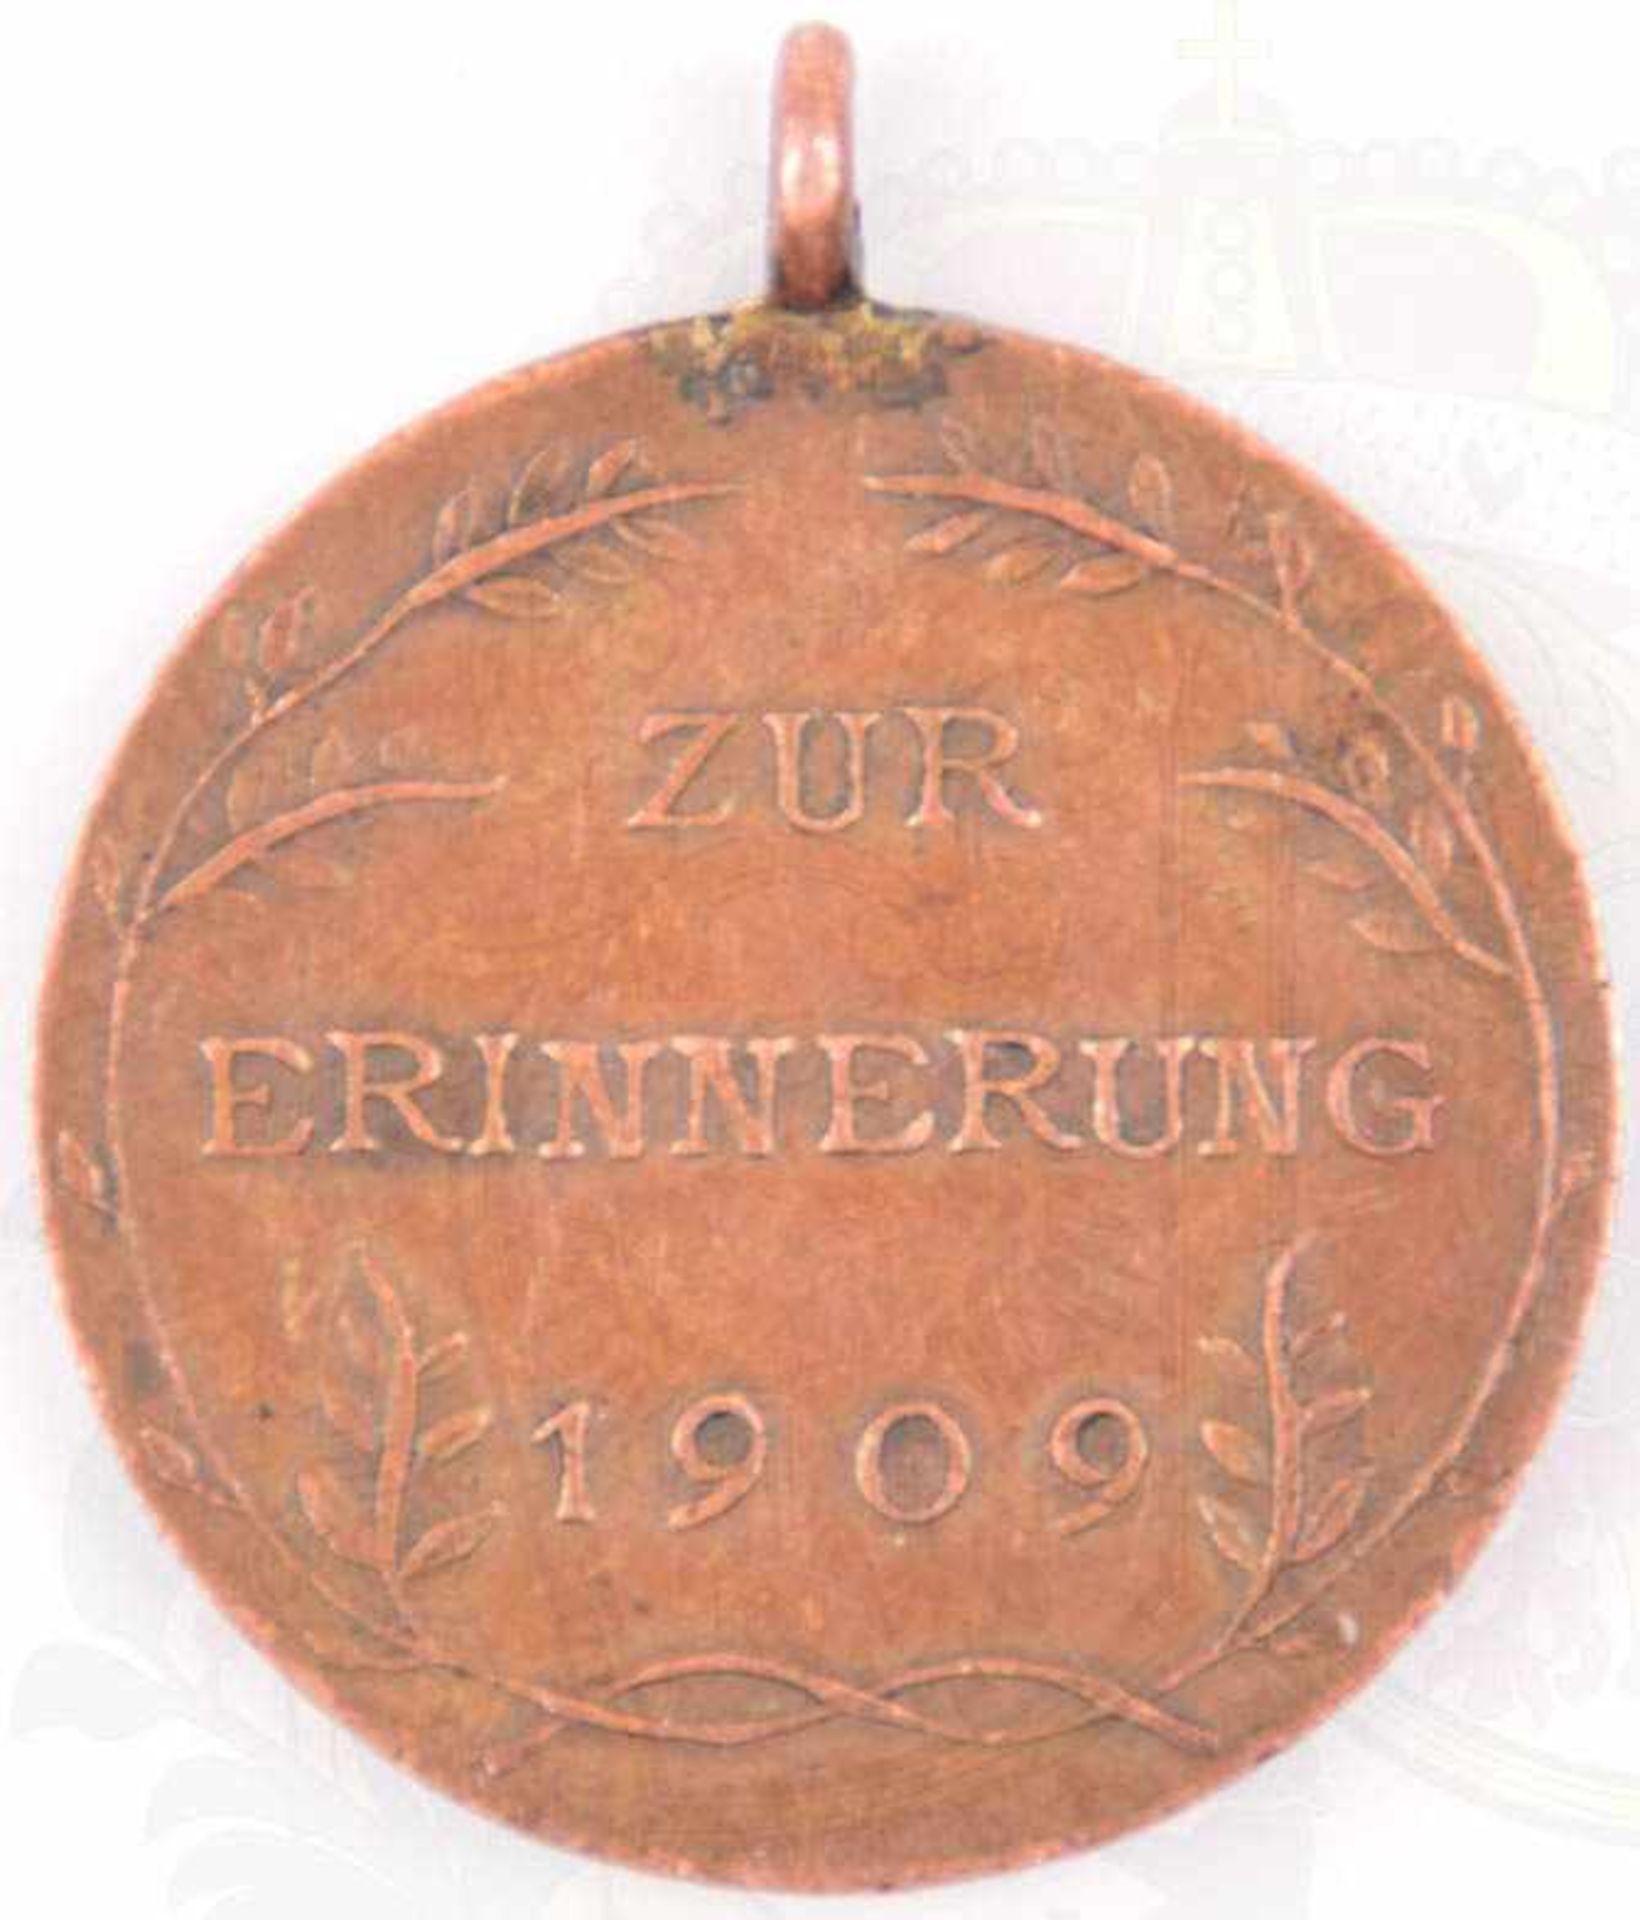 BRONZENE ERINNERUNGSMEDAILLE 1909, Bronze, relief. Portrait, Stempelschneider „A.B.“, Bandring u. - Bild 2 aus 2